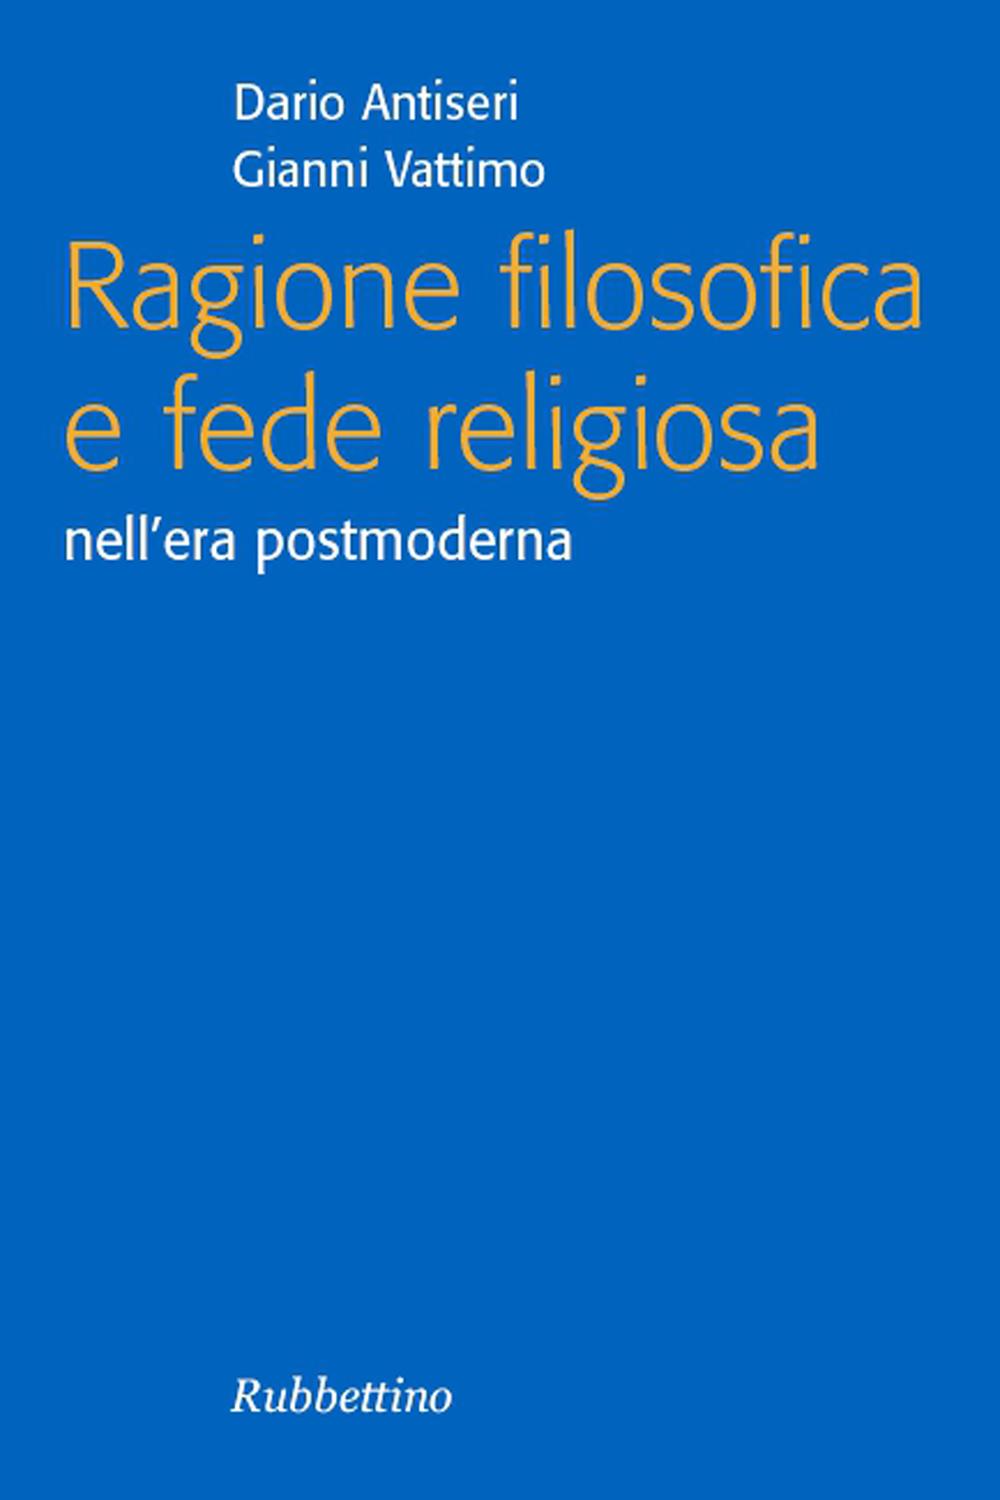 Ragione filosofica e fede religiosa - Dario Antiseri, Gianni Vattimo